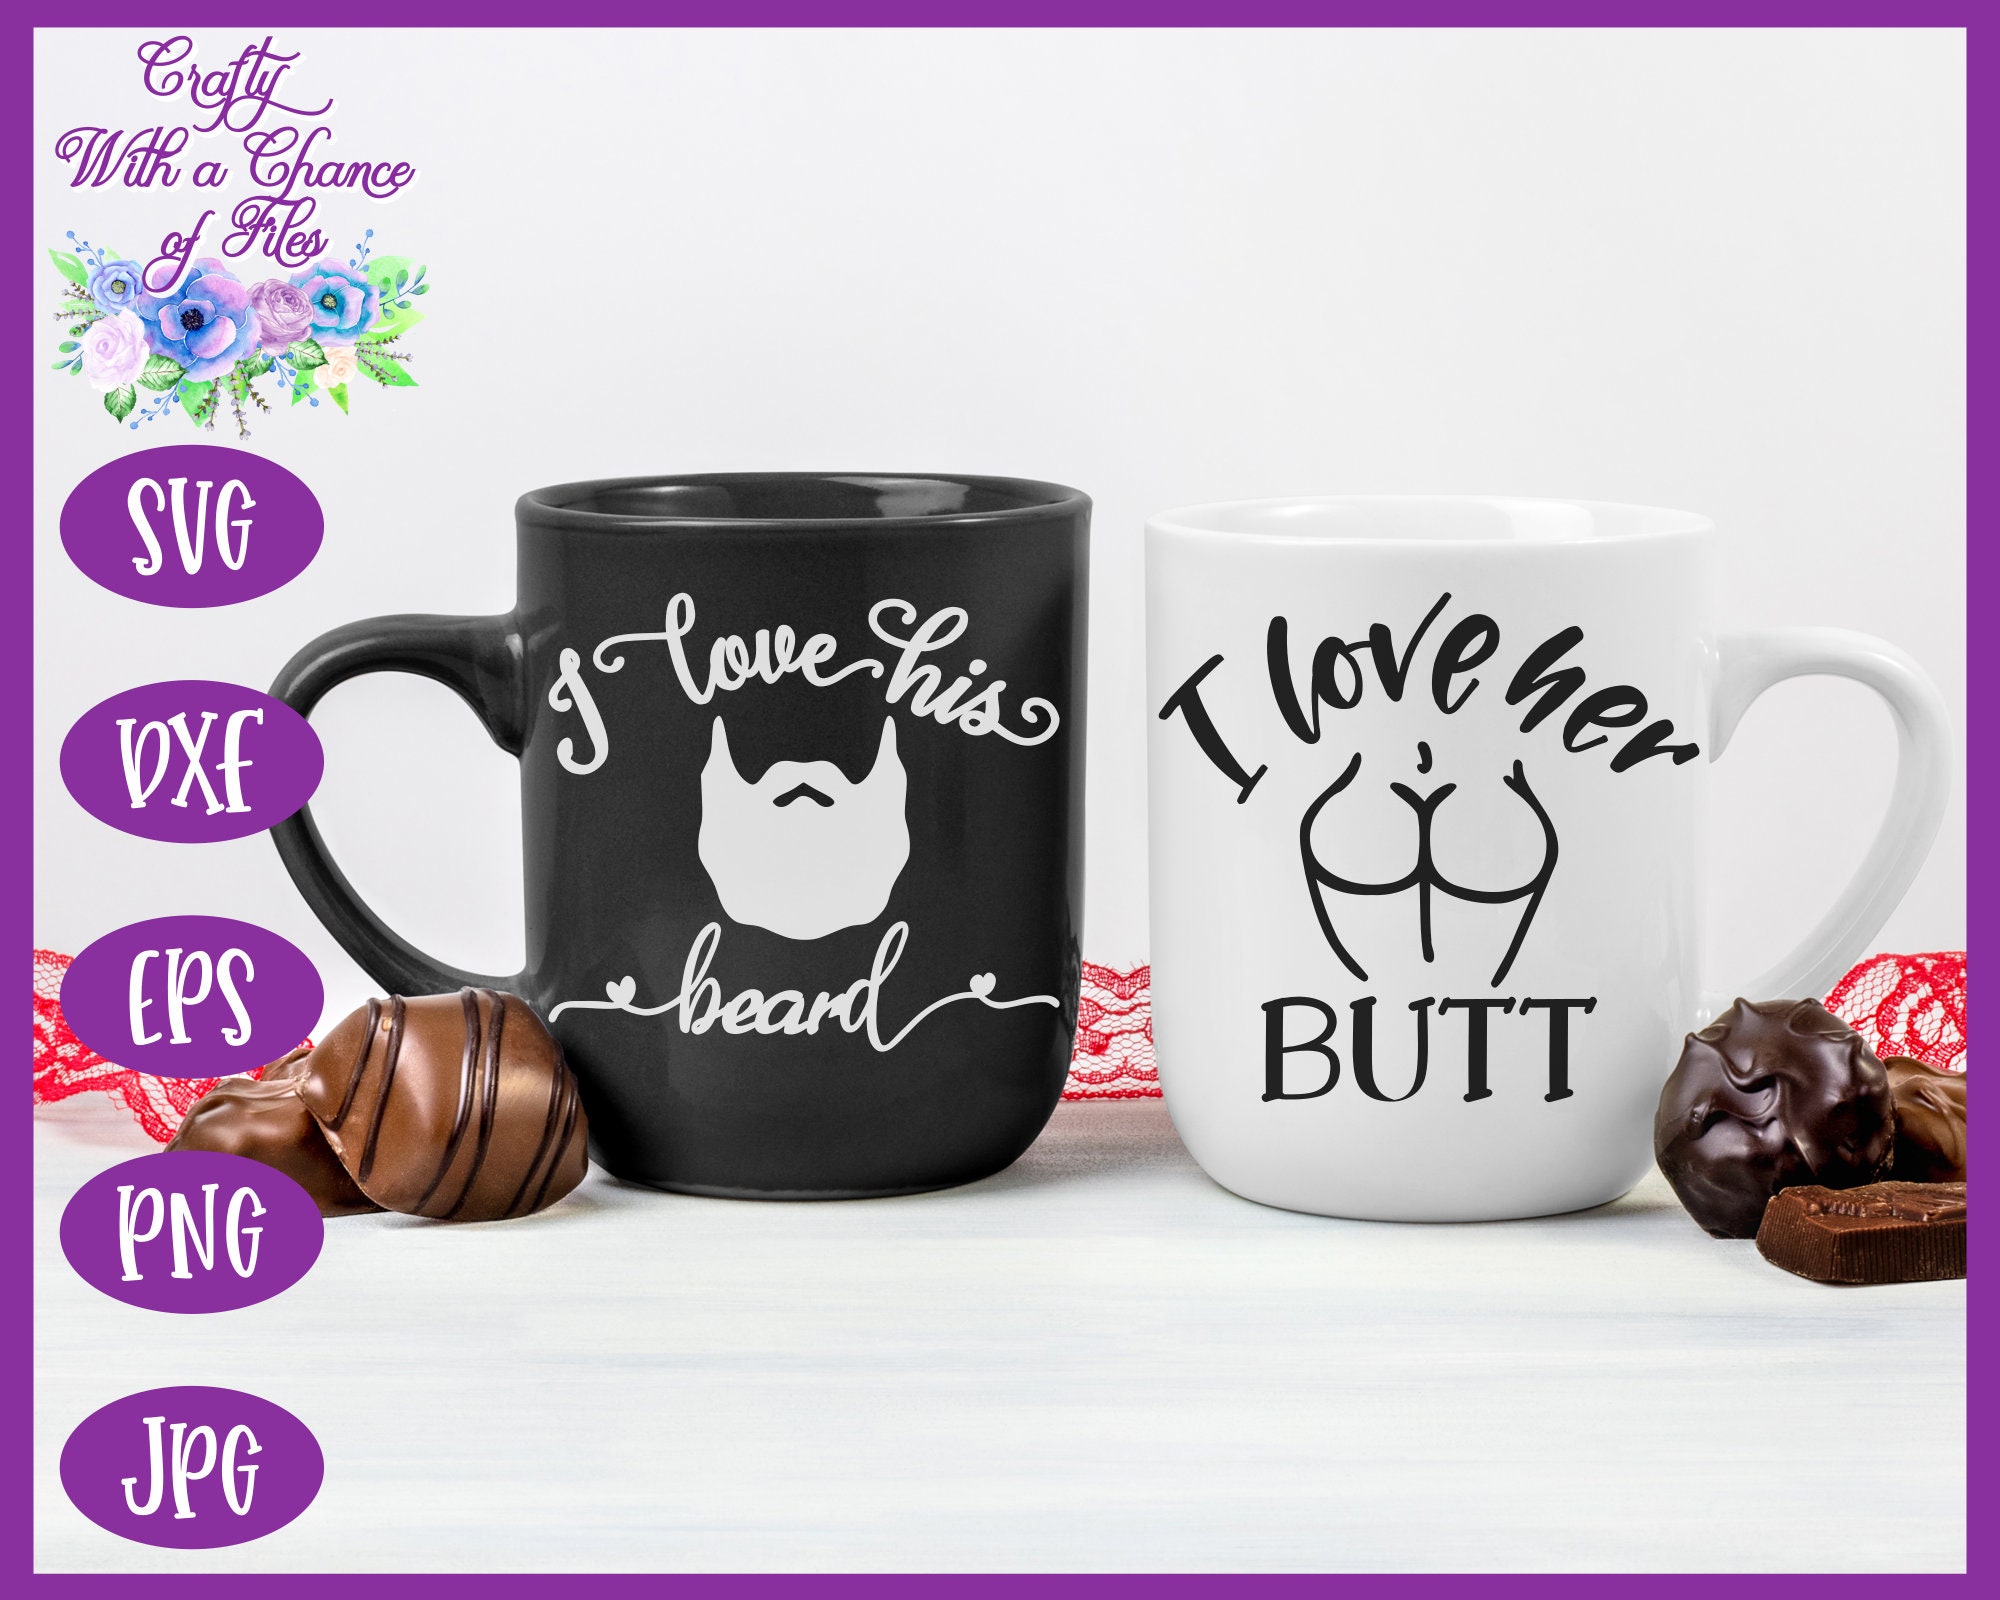 Personalized Valentine Funny Gift Beard And Butt Matching Mug - Bestiewisdom